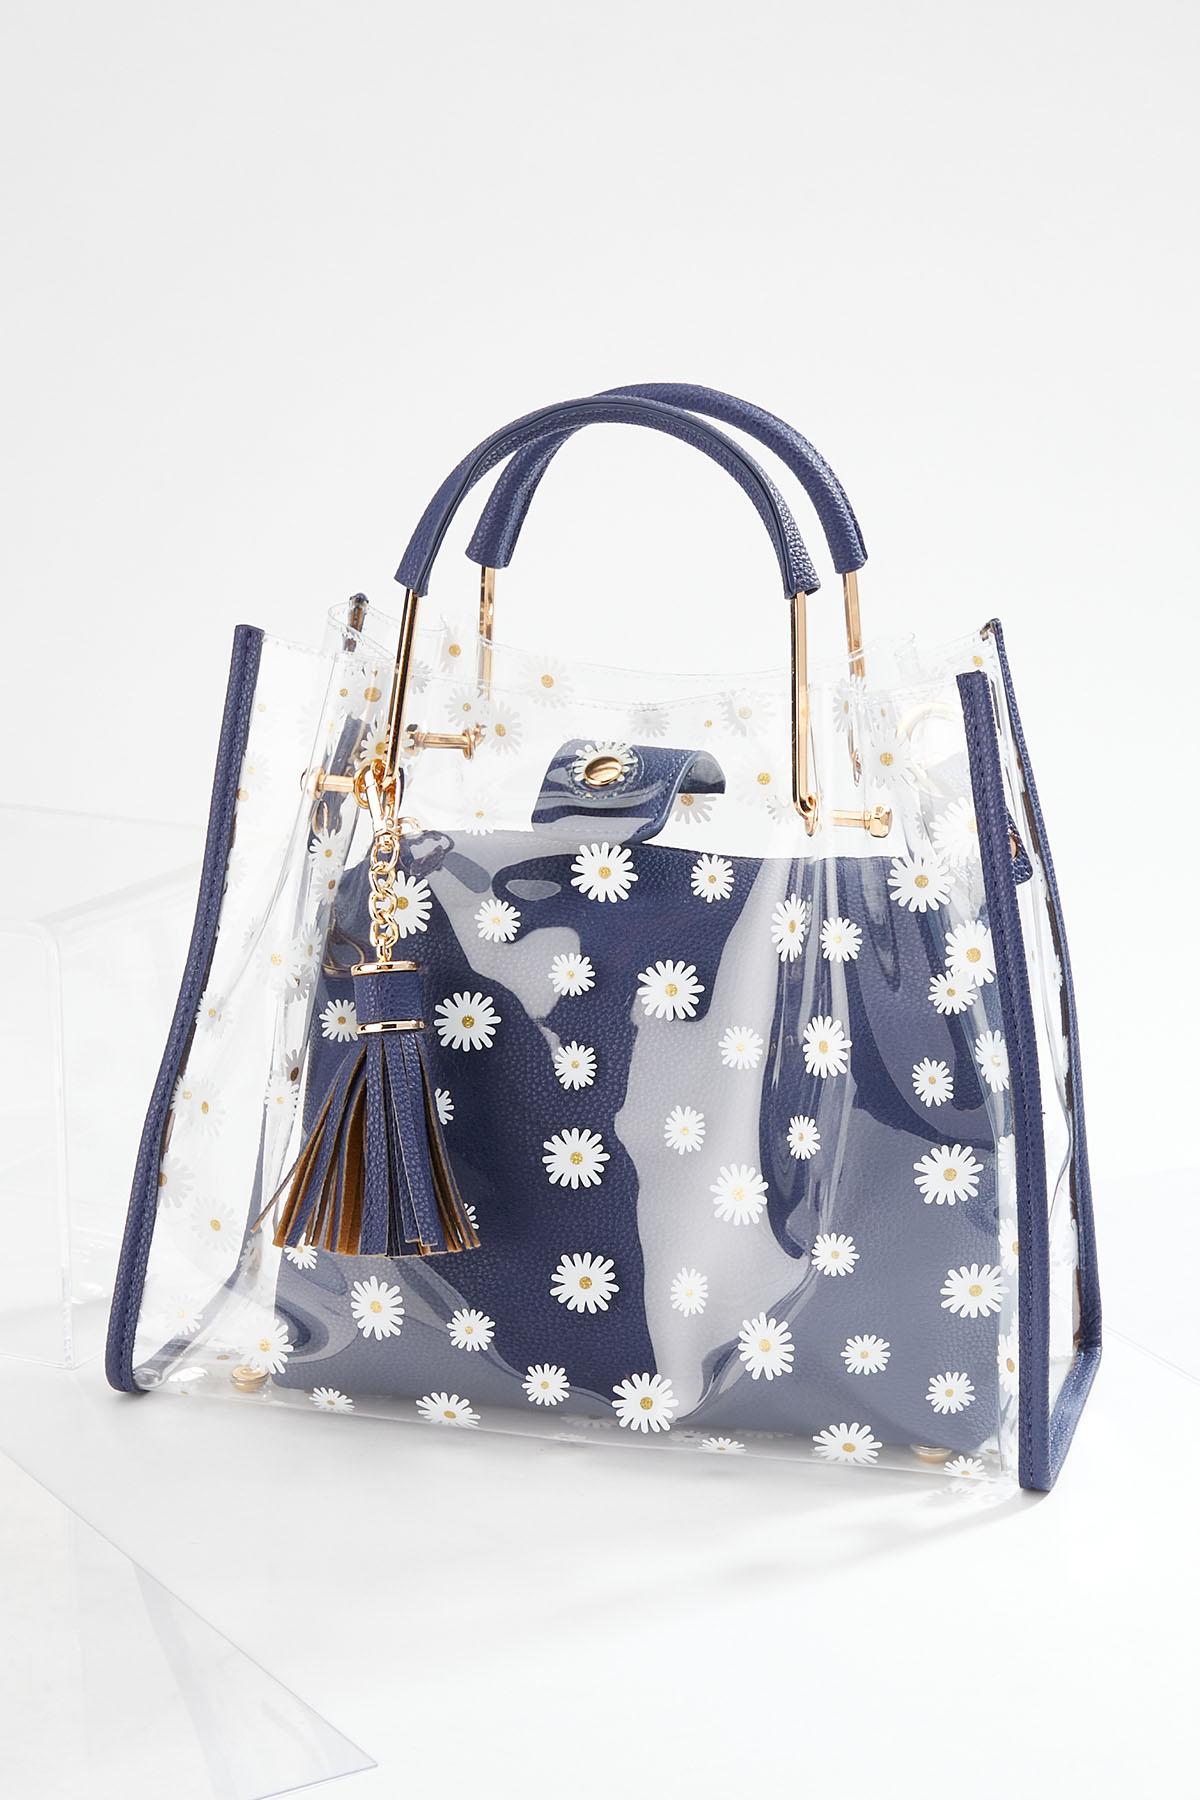 Daisy Lucite Handbag Set